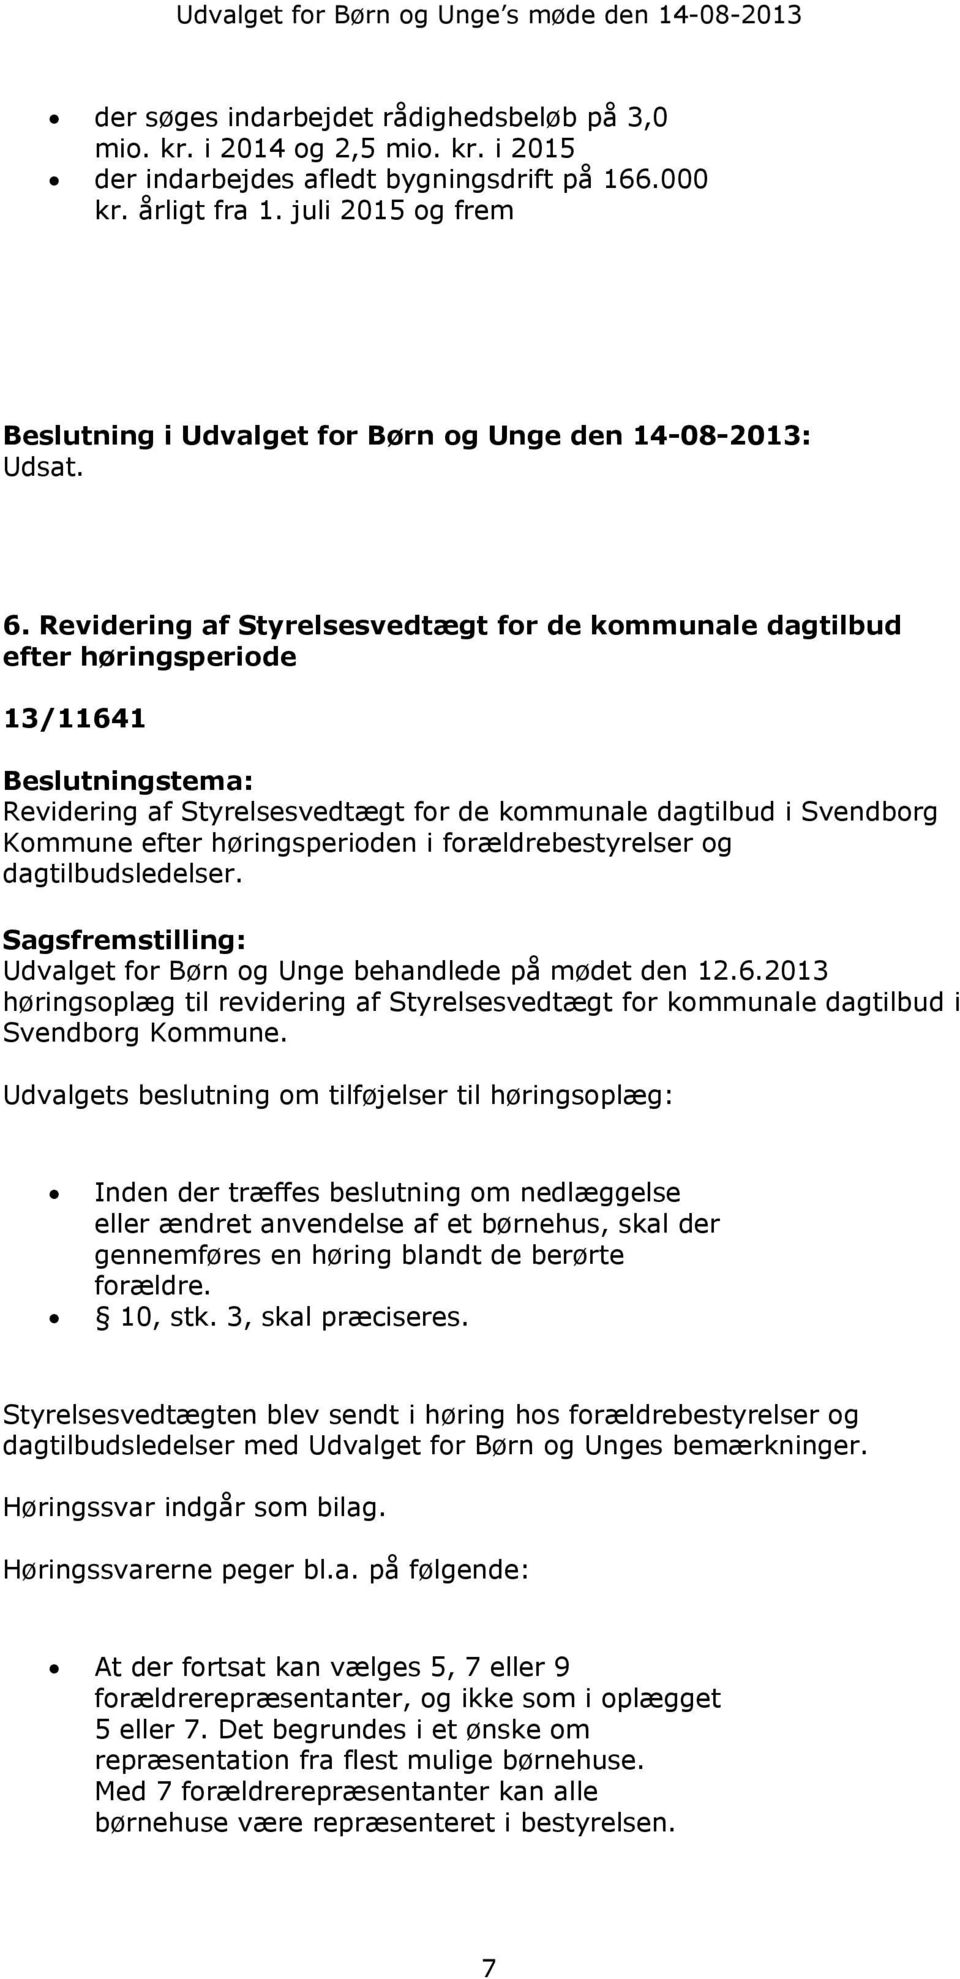 Revidering af Styrelsesvedtægt for de kommunale dagtilbud efter høringsperiode 13/11641 Beslutningstema: Revidering af Styrelsesvedtægt for de kommunale dagtilbud i Svendborg Kommune efter